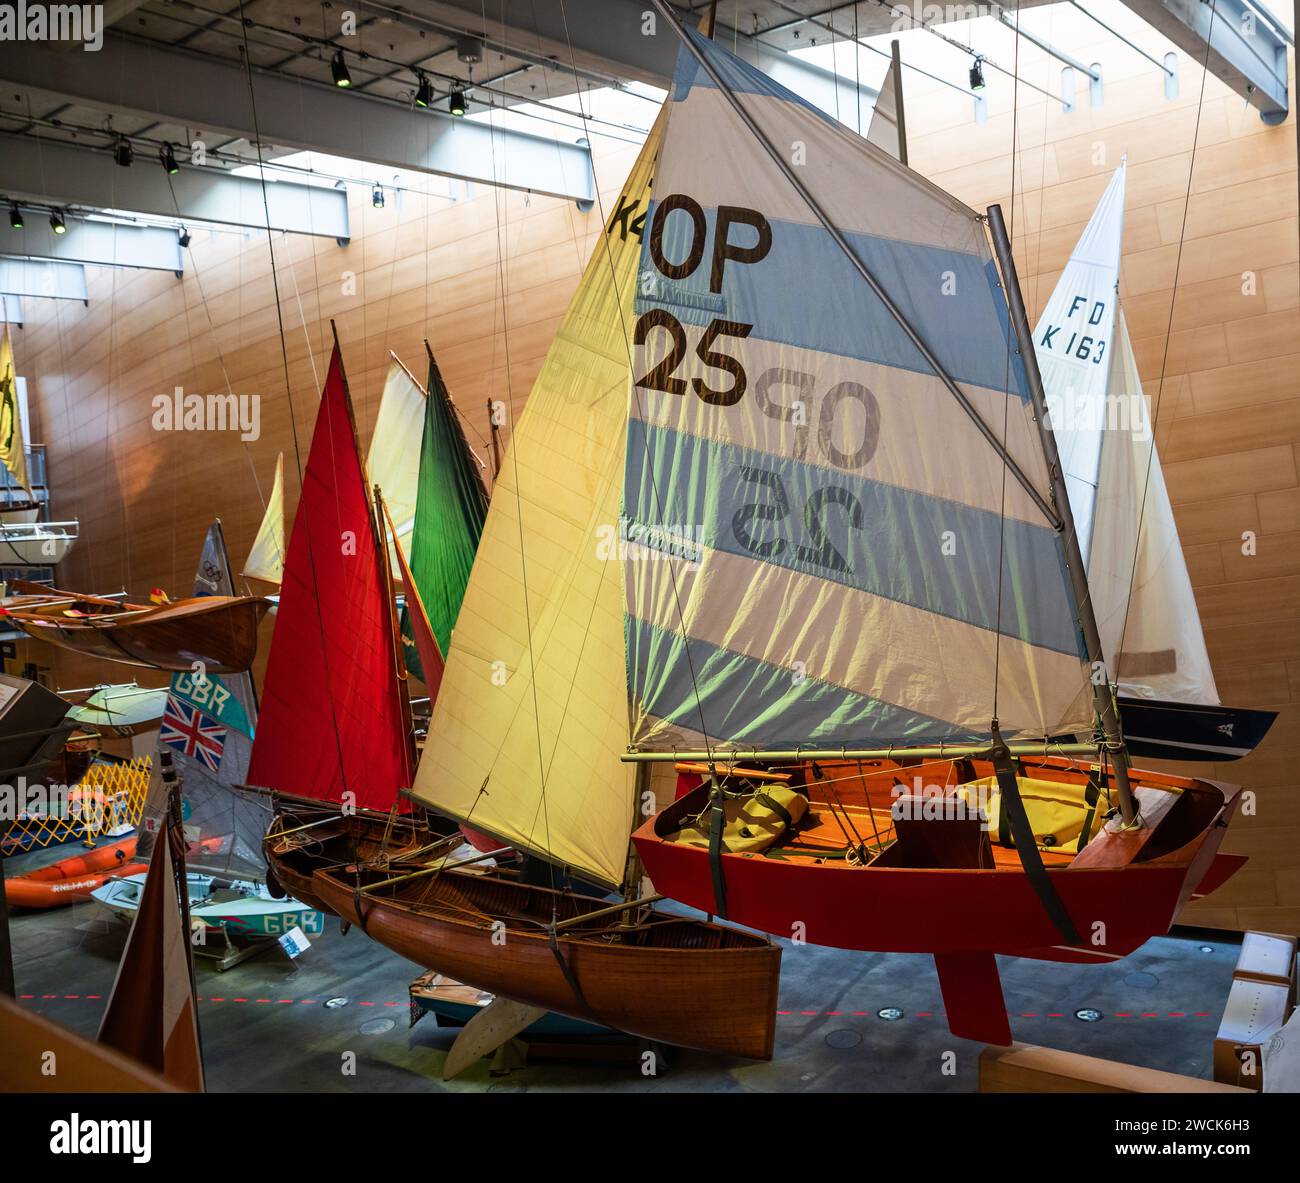 Un grand choix de bateaux exposés au Musée National Maritime de Falmouth Banque D'Images